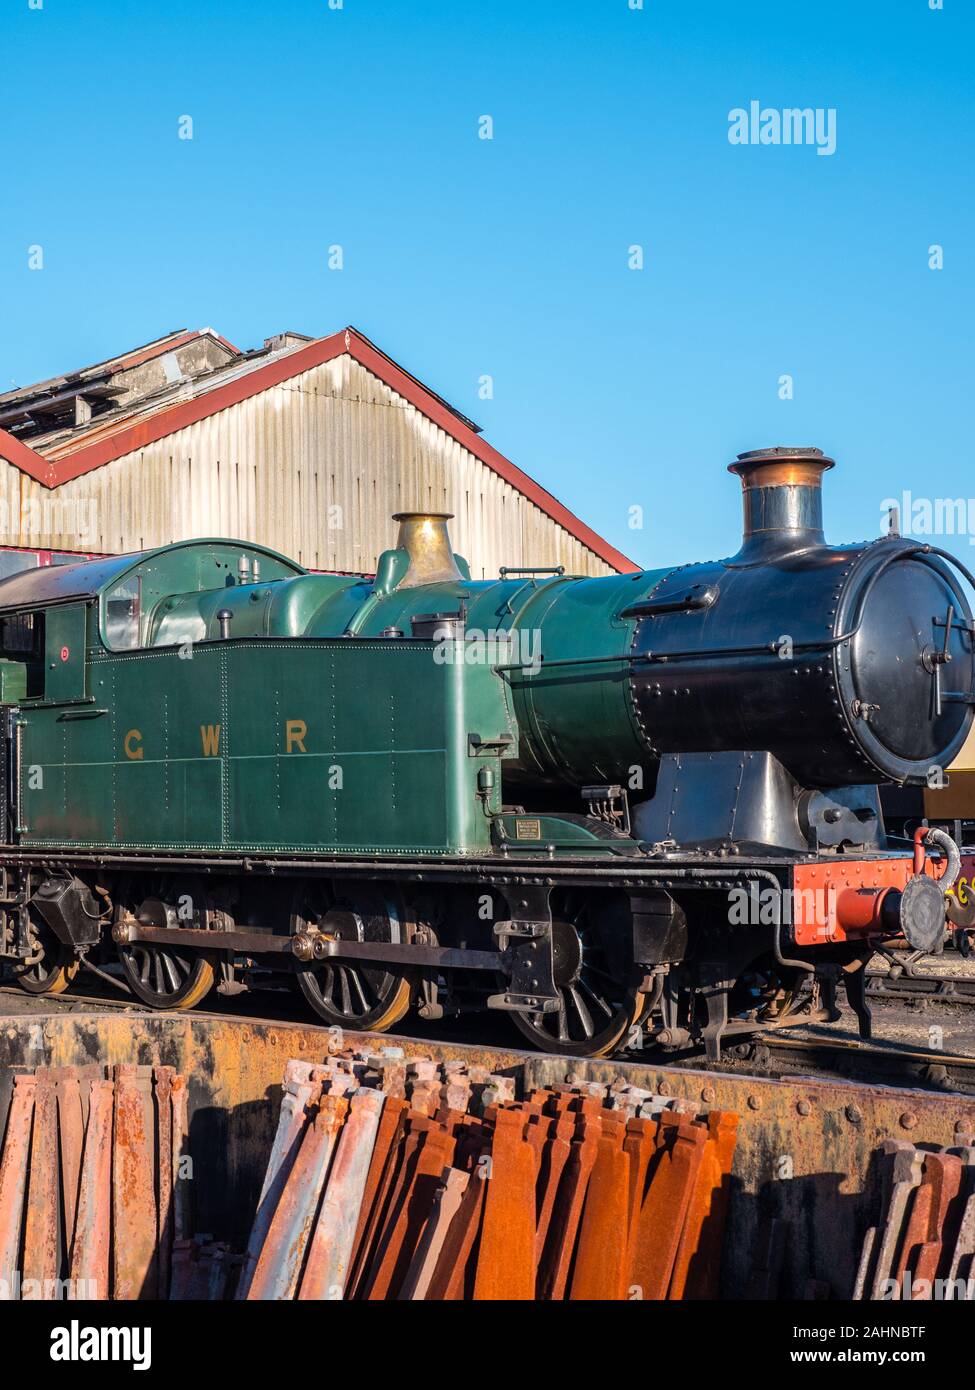 7202 - 72xx Class GWR Train à vapeur, Didcot Parkway, Oxfordshire, England, UK, FR. Banque D'Images